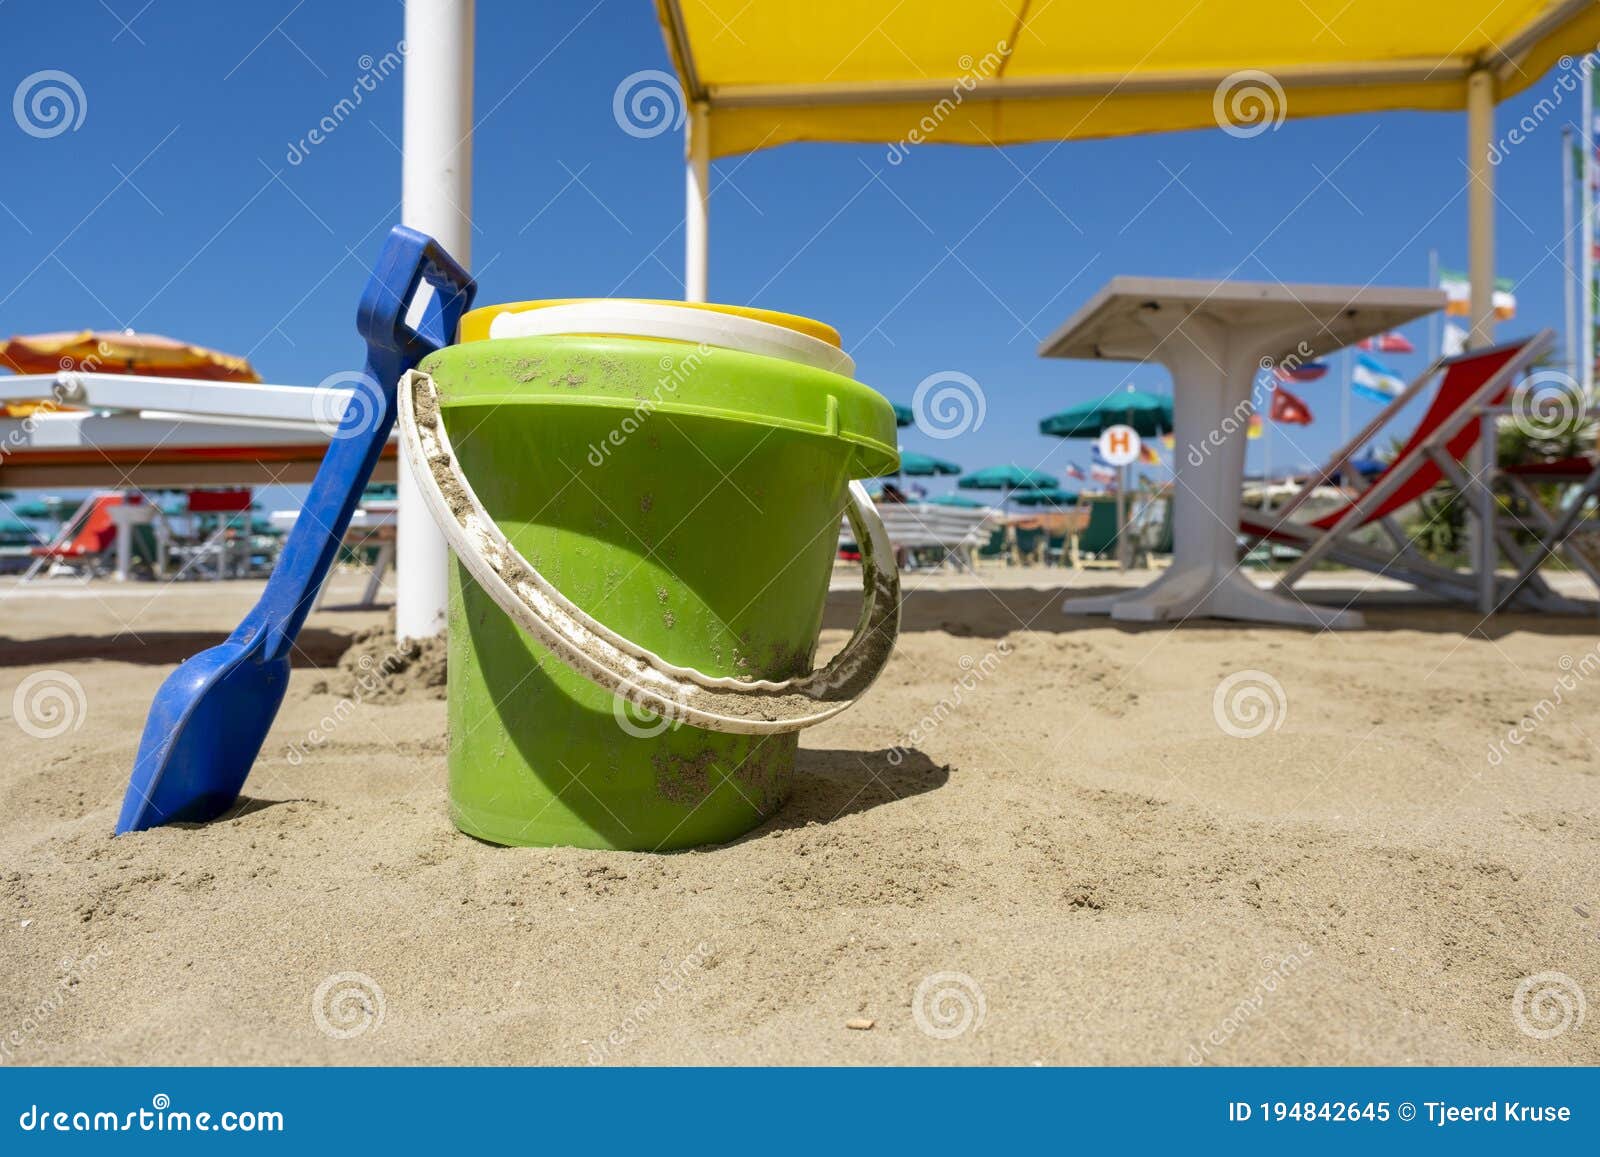 Juguetes De Playa Para Niños. Baldes Y Palas En Arena En Un Día Soleado Imagen de archivo - Imagen paleta, playa: 194842645